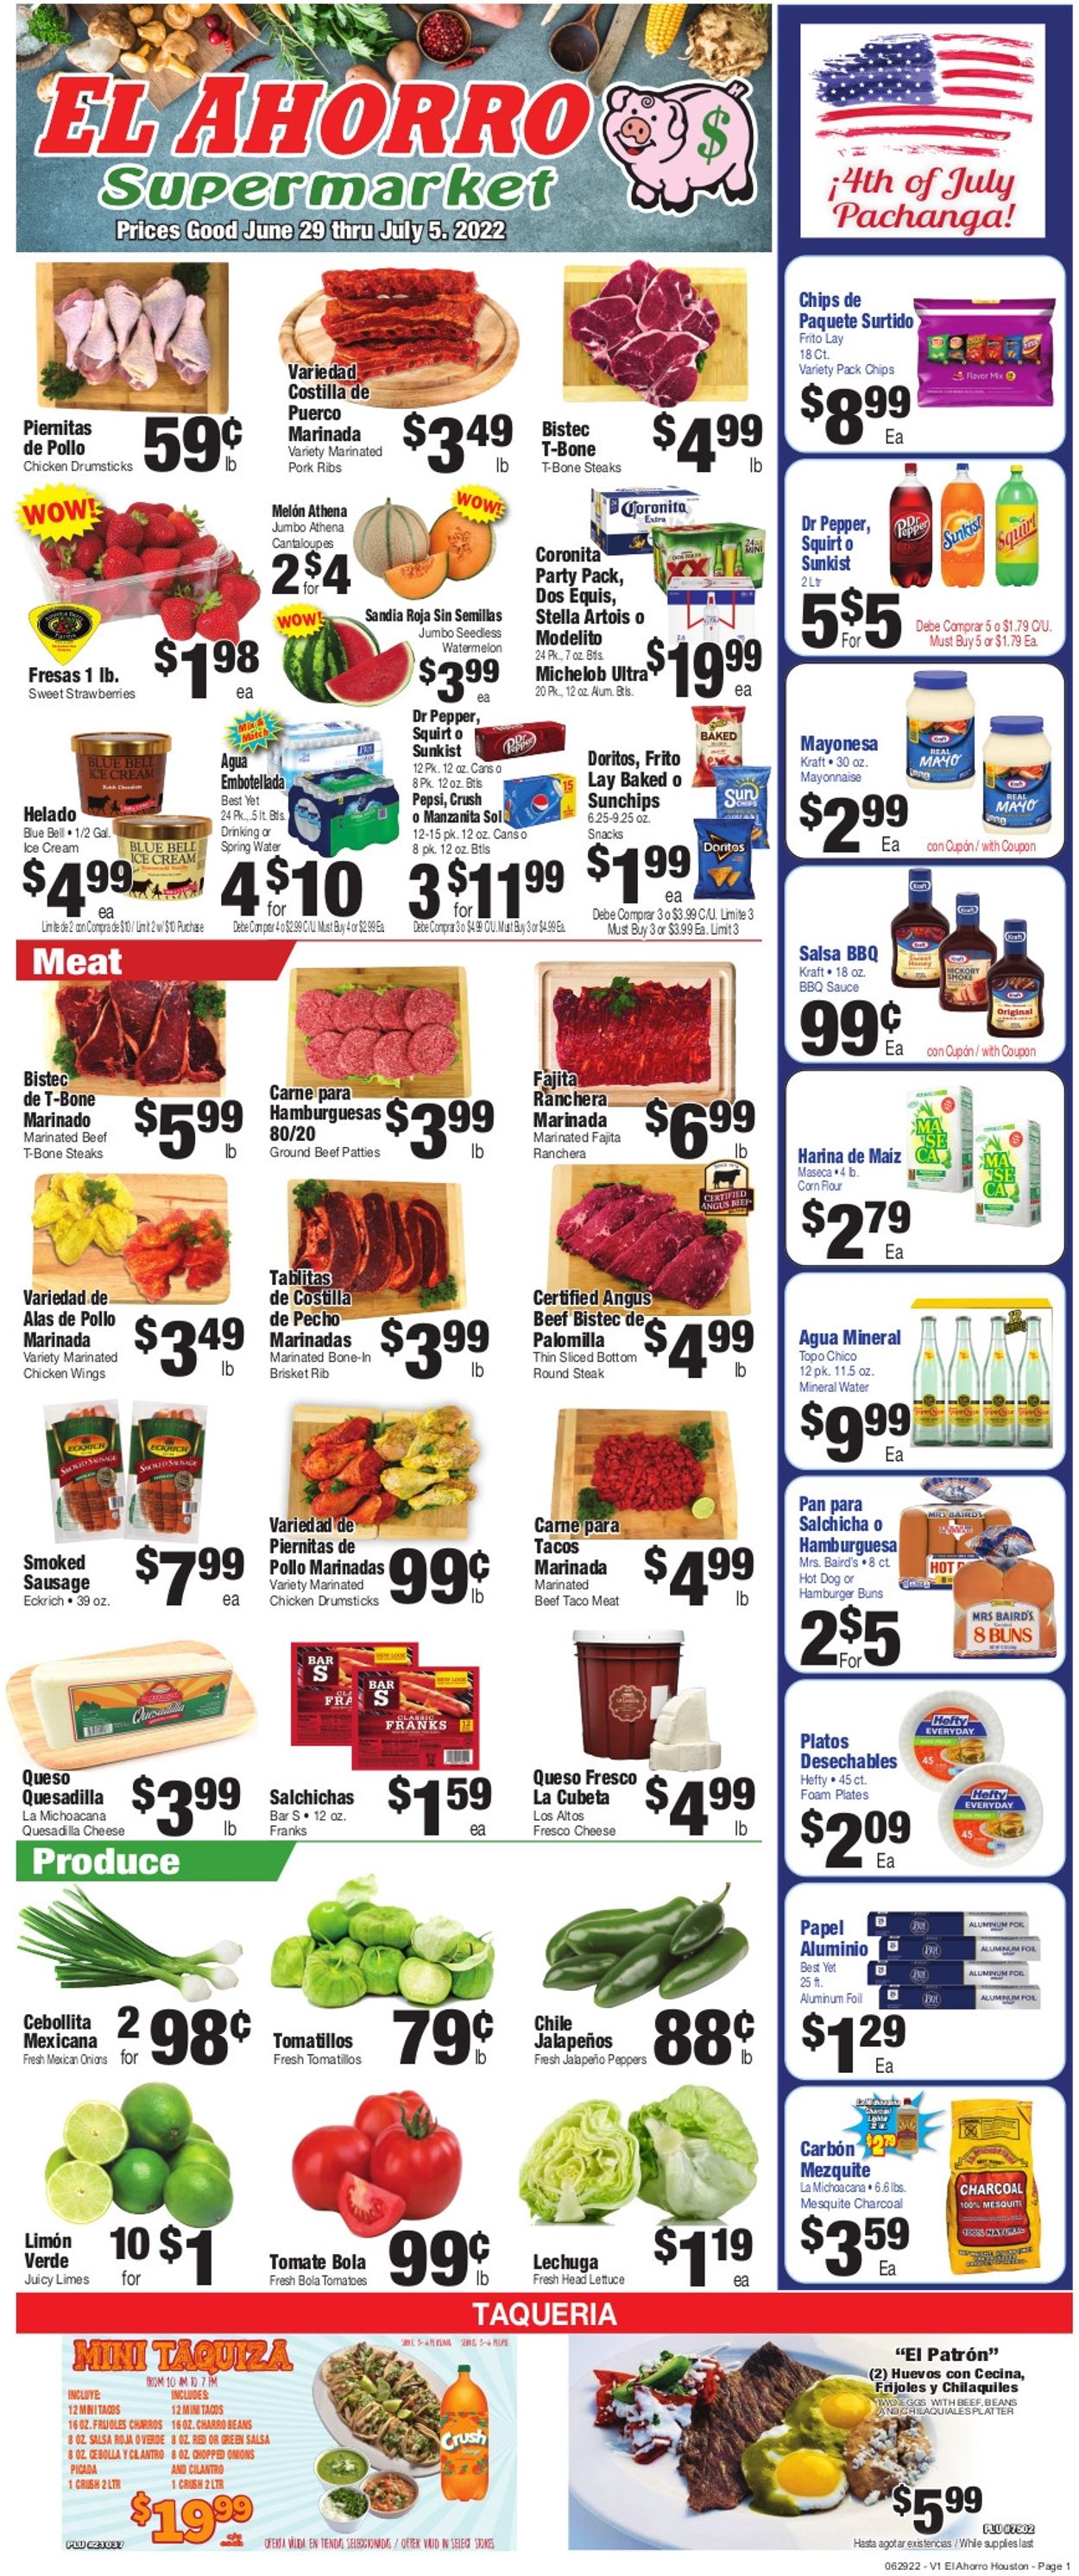 El Ahorro Supermarket Weekly Ad Circular - valid 06/29-07/05/2022